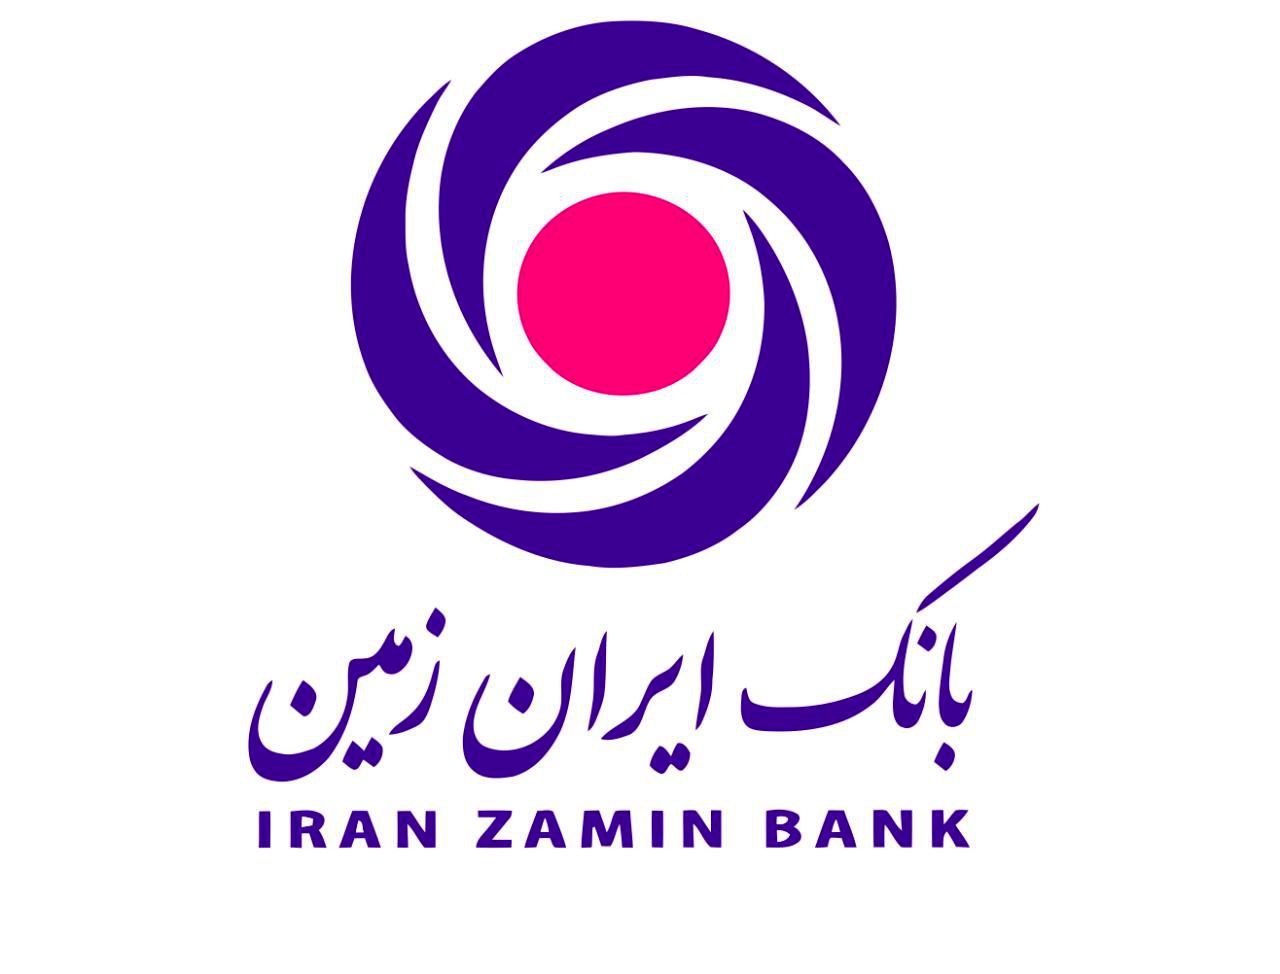 بانک ایران زمین در حال توسعه است